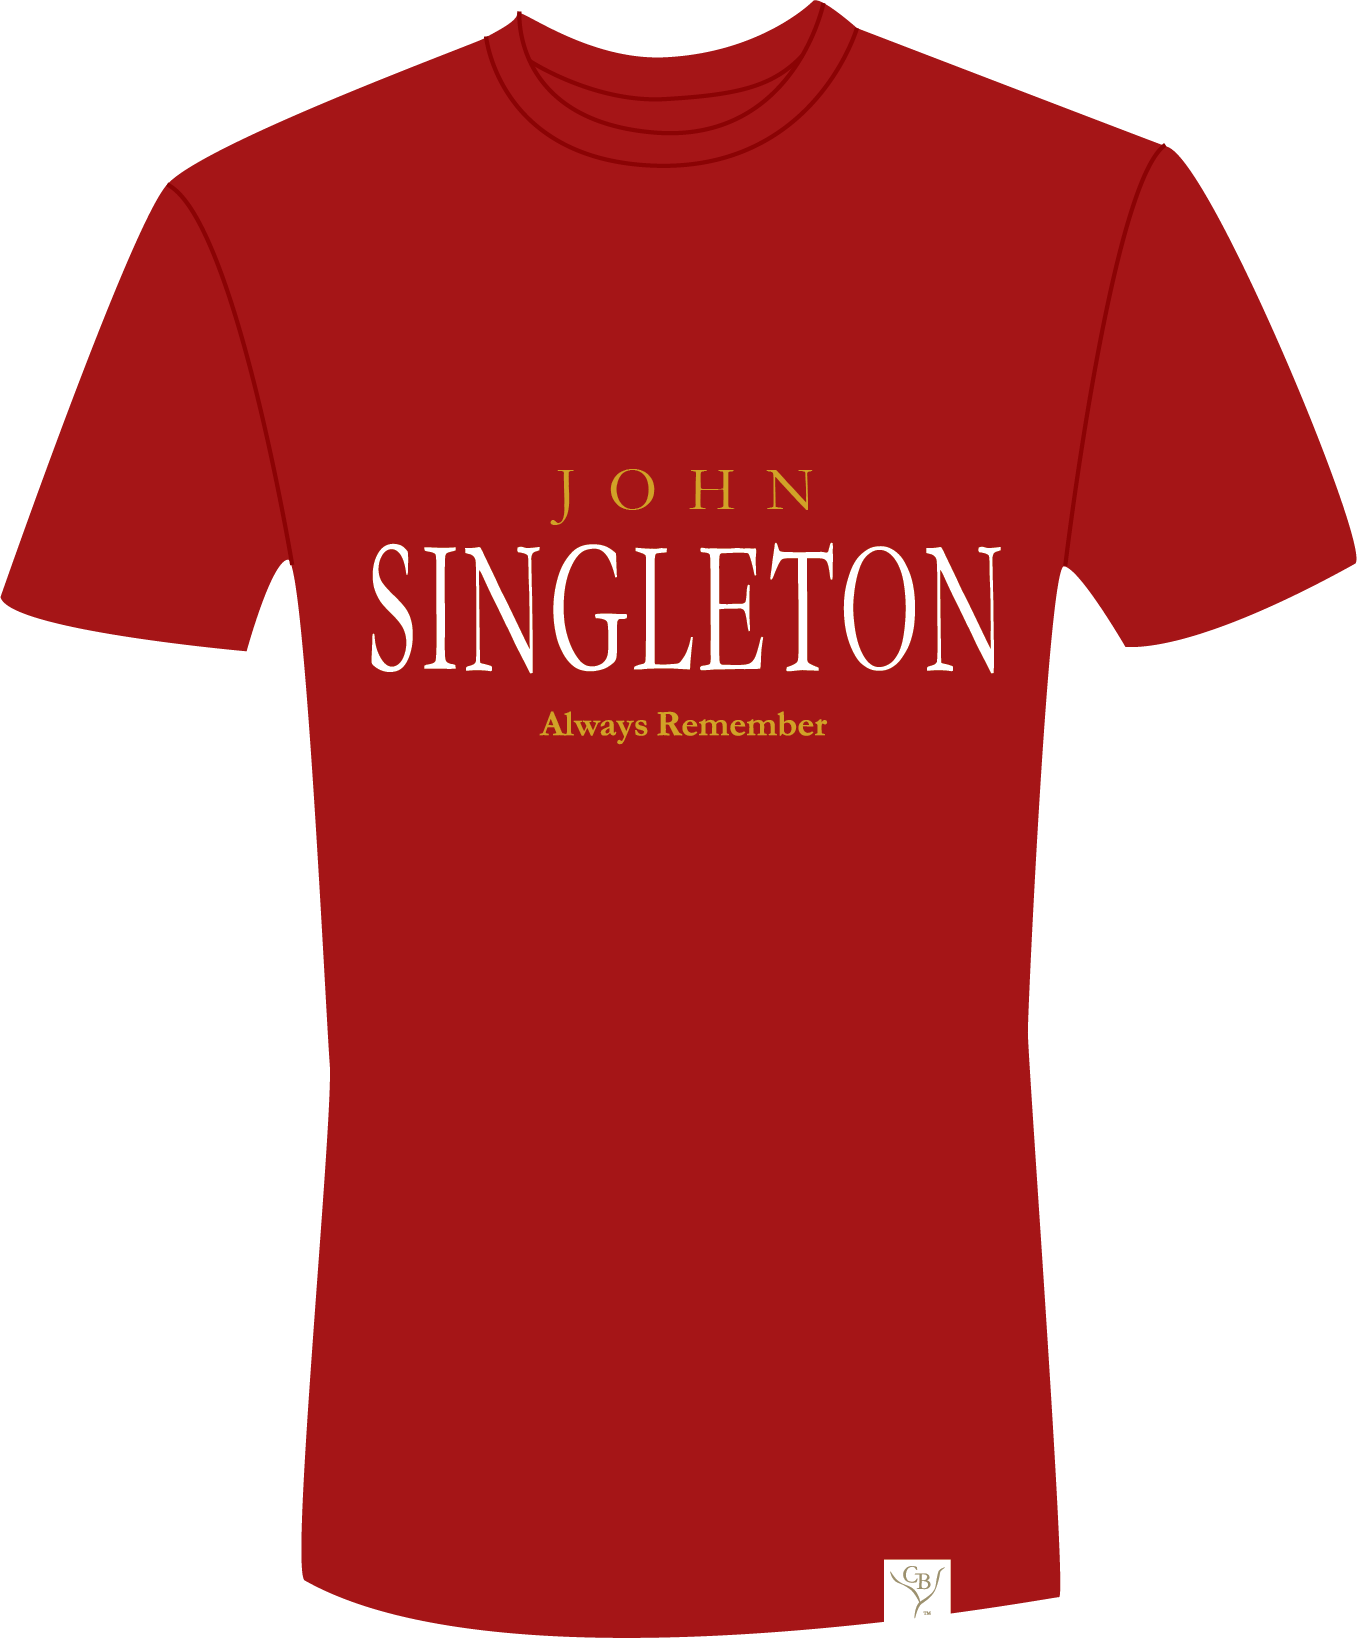 The Singleton 9